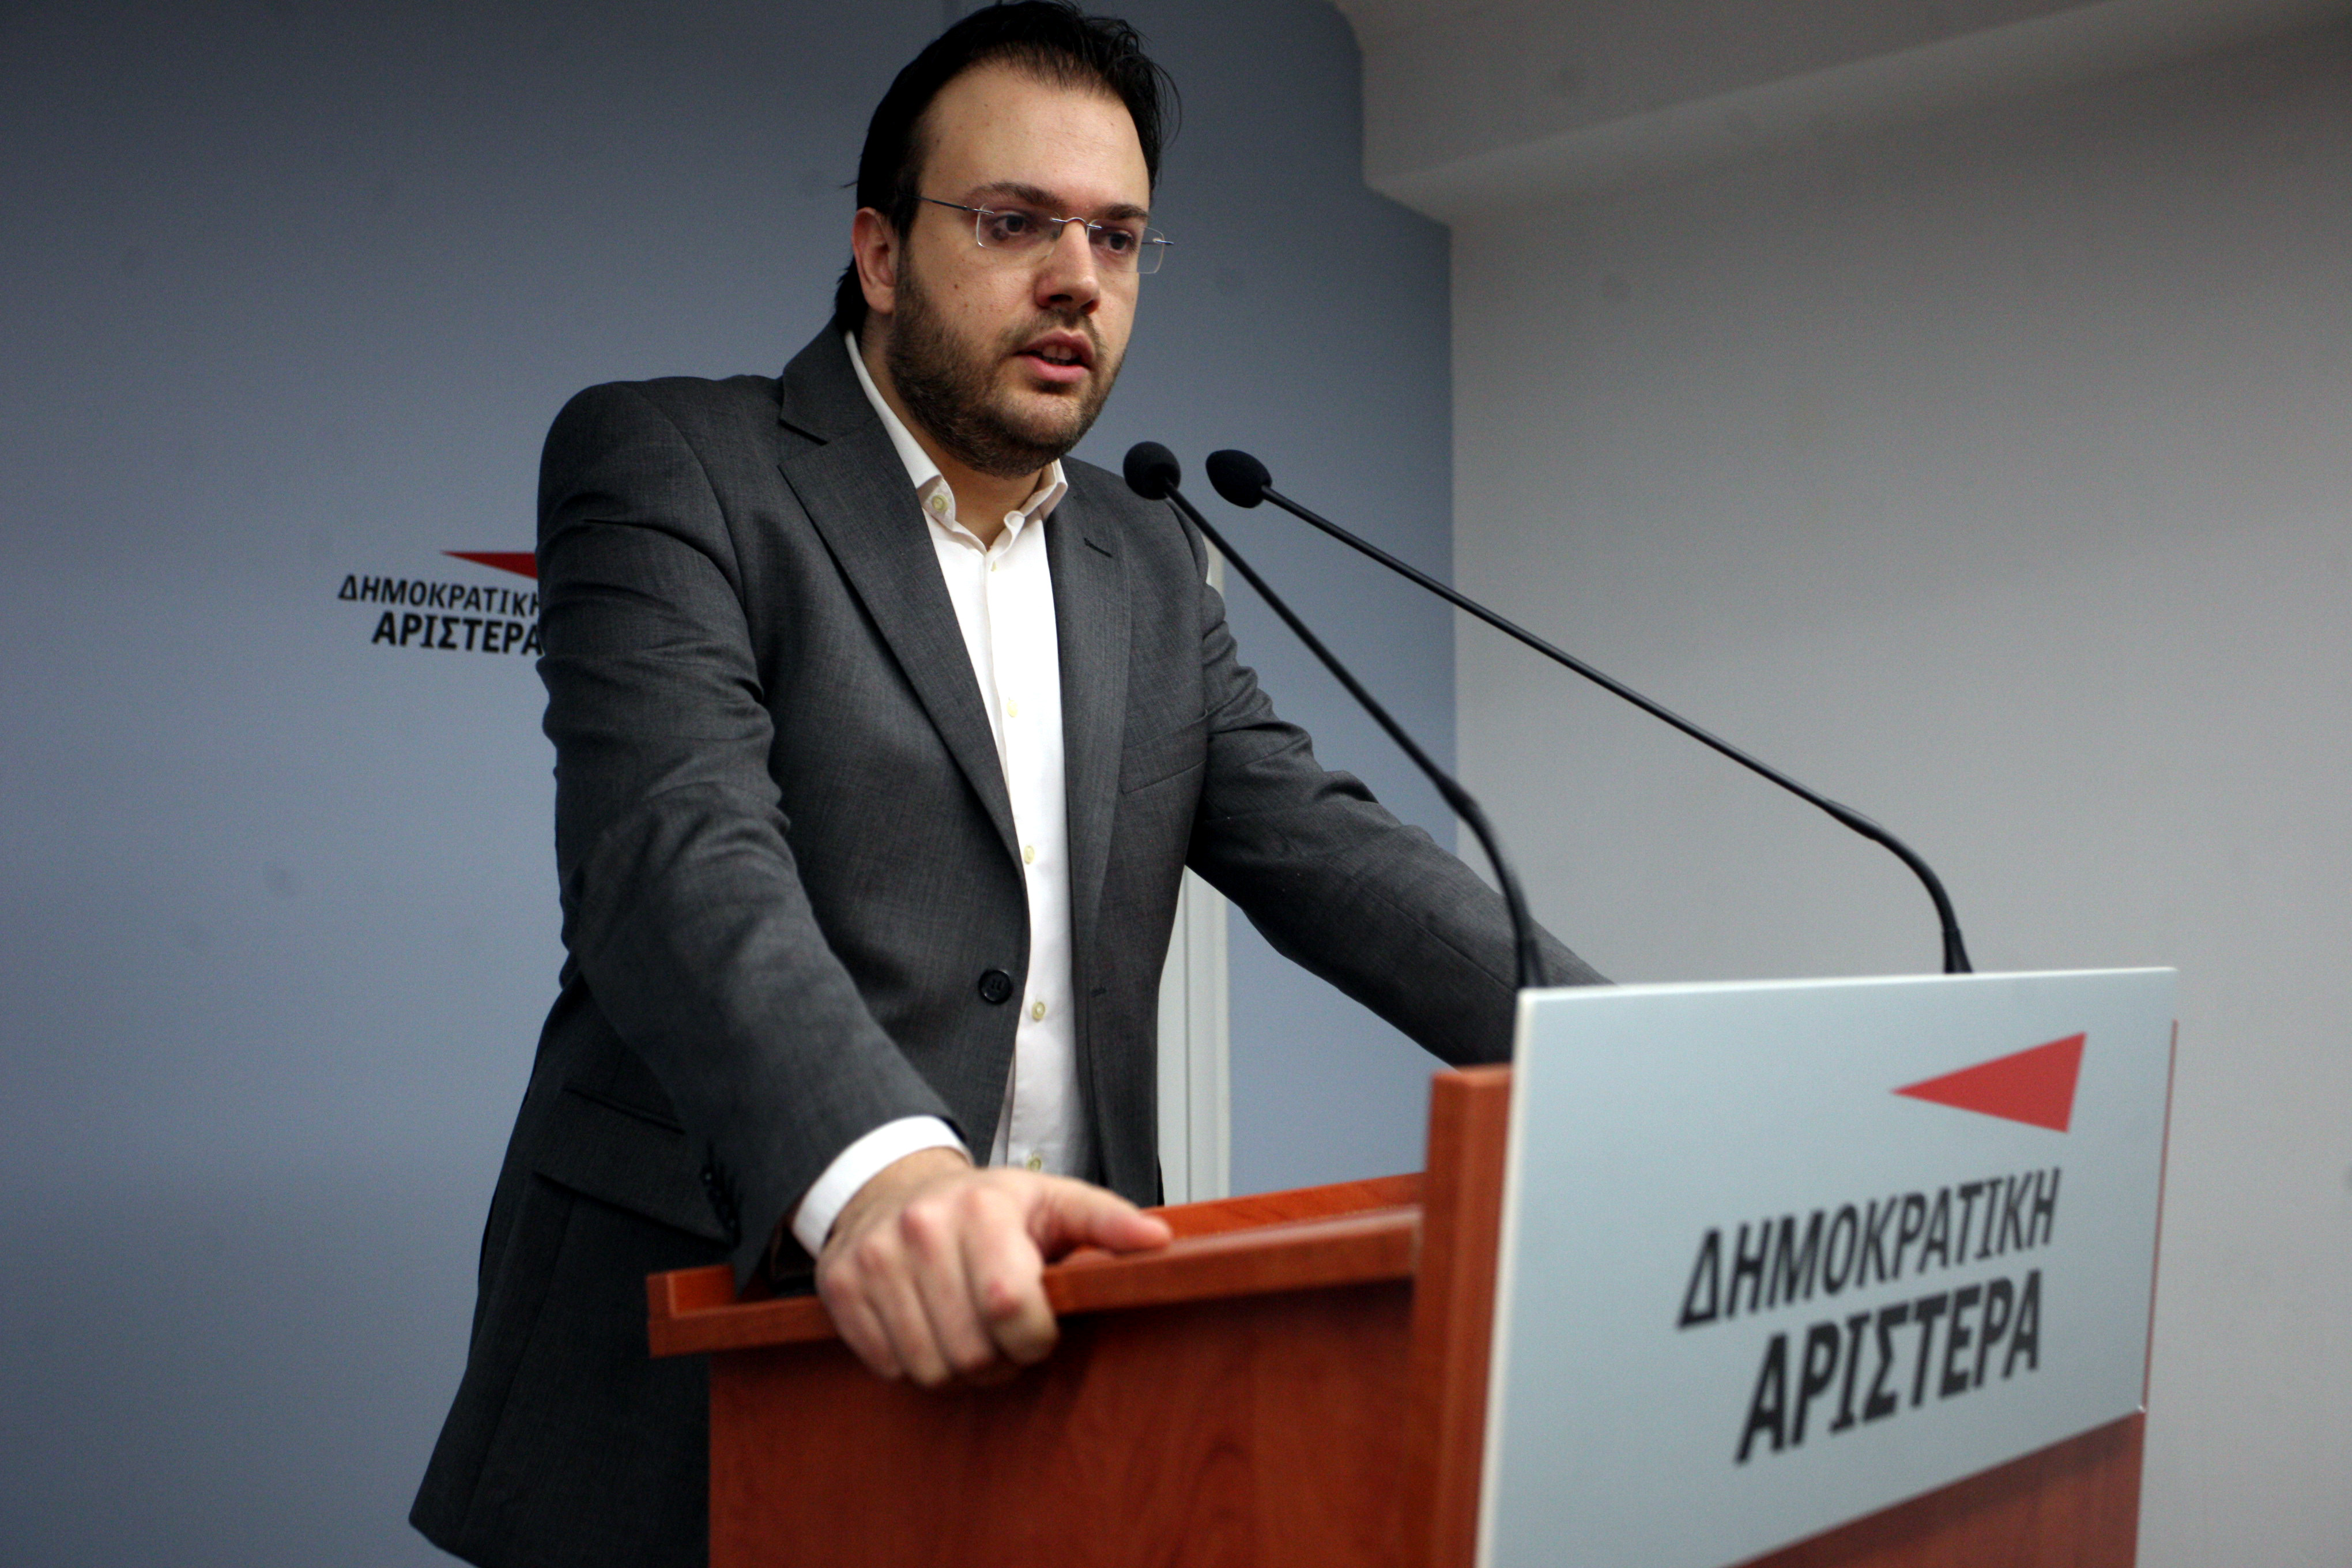 Θ. Θεοχαρόπουλος: Η Δημοκρατική Αριστερά πρέπει να αποκτήσει ξανά το διακριτό της πολιτικό πλαίσιο